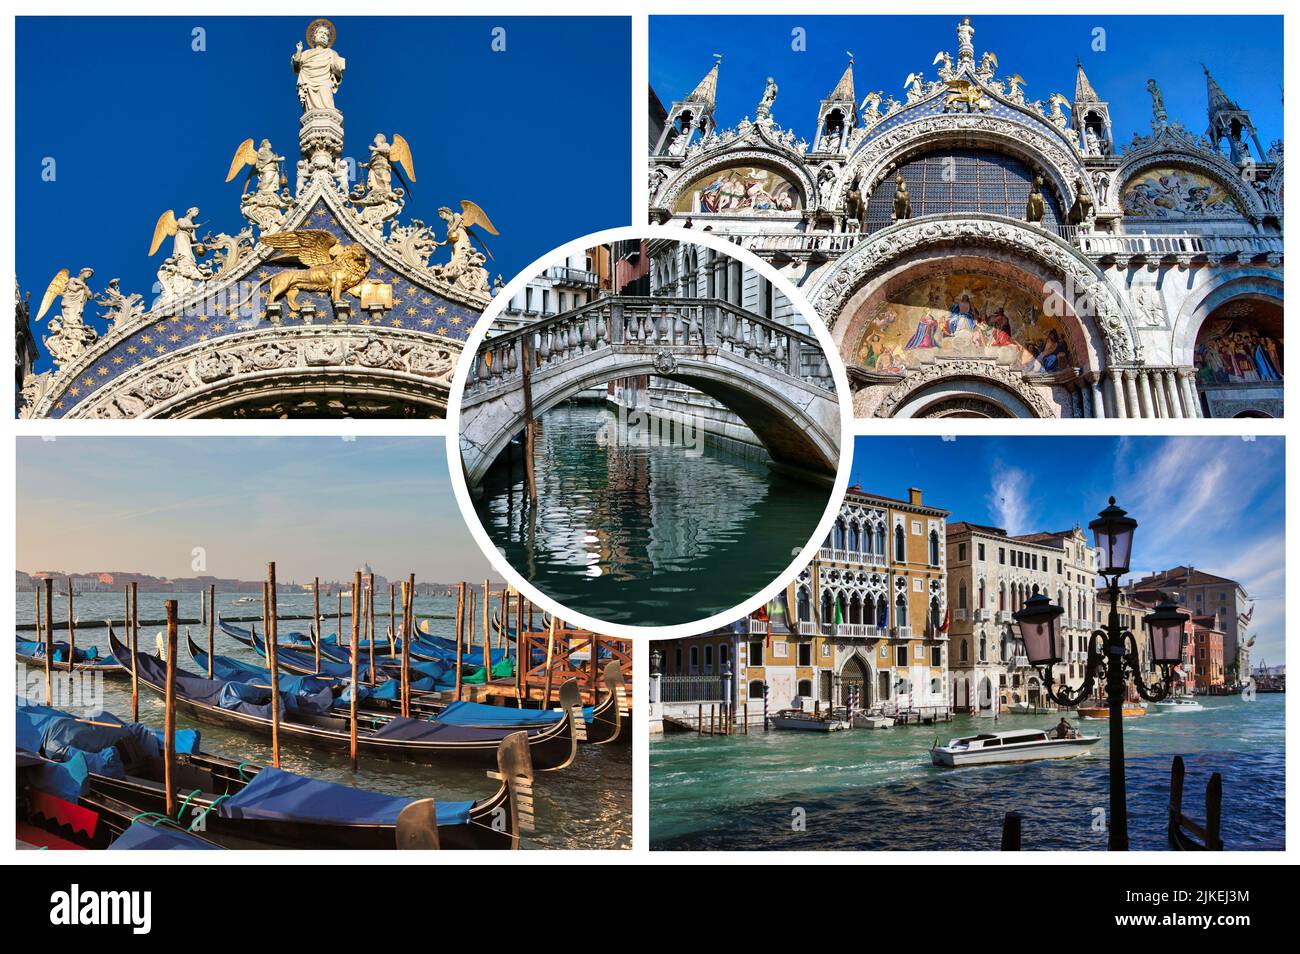 Das berühmte Venedig, die Hauptstadt der Region Venetien, (Italien) liegt auf mehr als 100 kleinen Inseln innerhalb einer Lagune in der Adria. Stockfoto